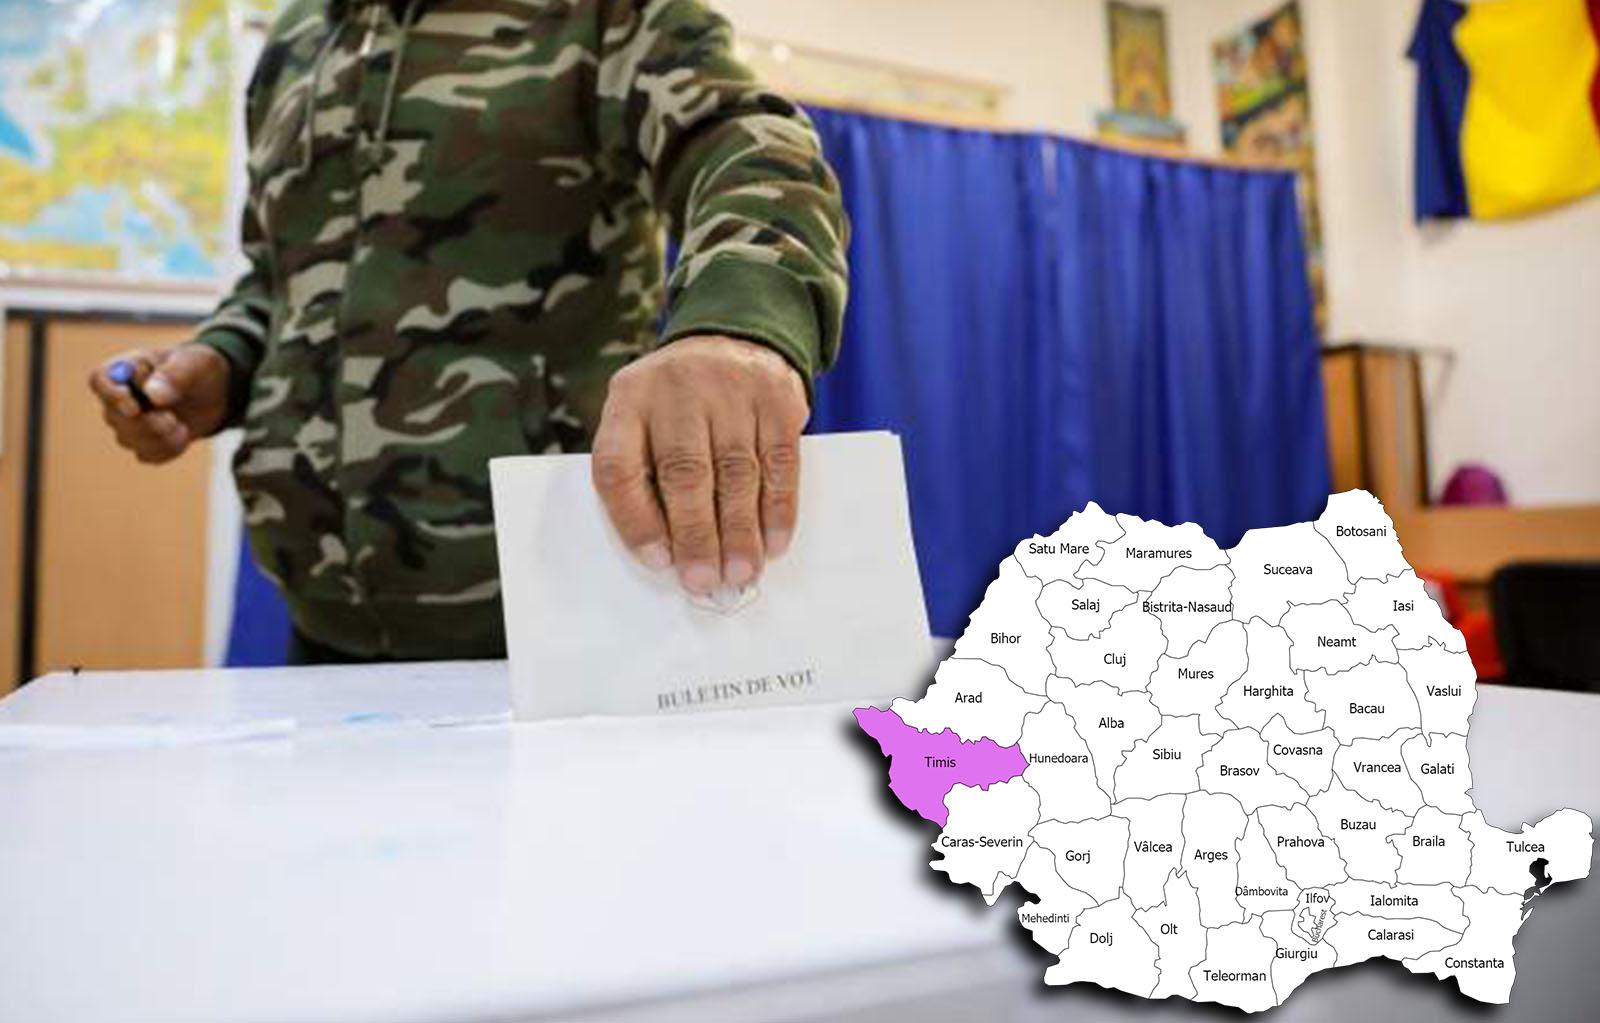 Rezultate alegeri parlamentare 2020 în județul Timiș. Cine câștigă alegerile pentru Senat și Camera Deputaților